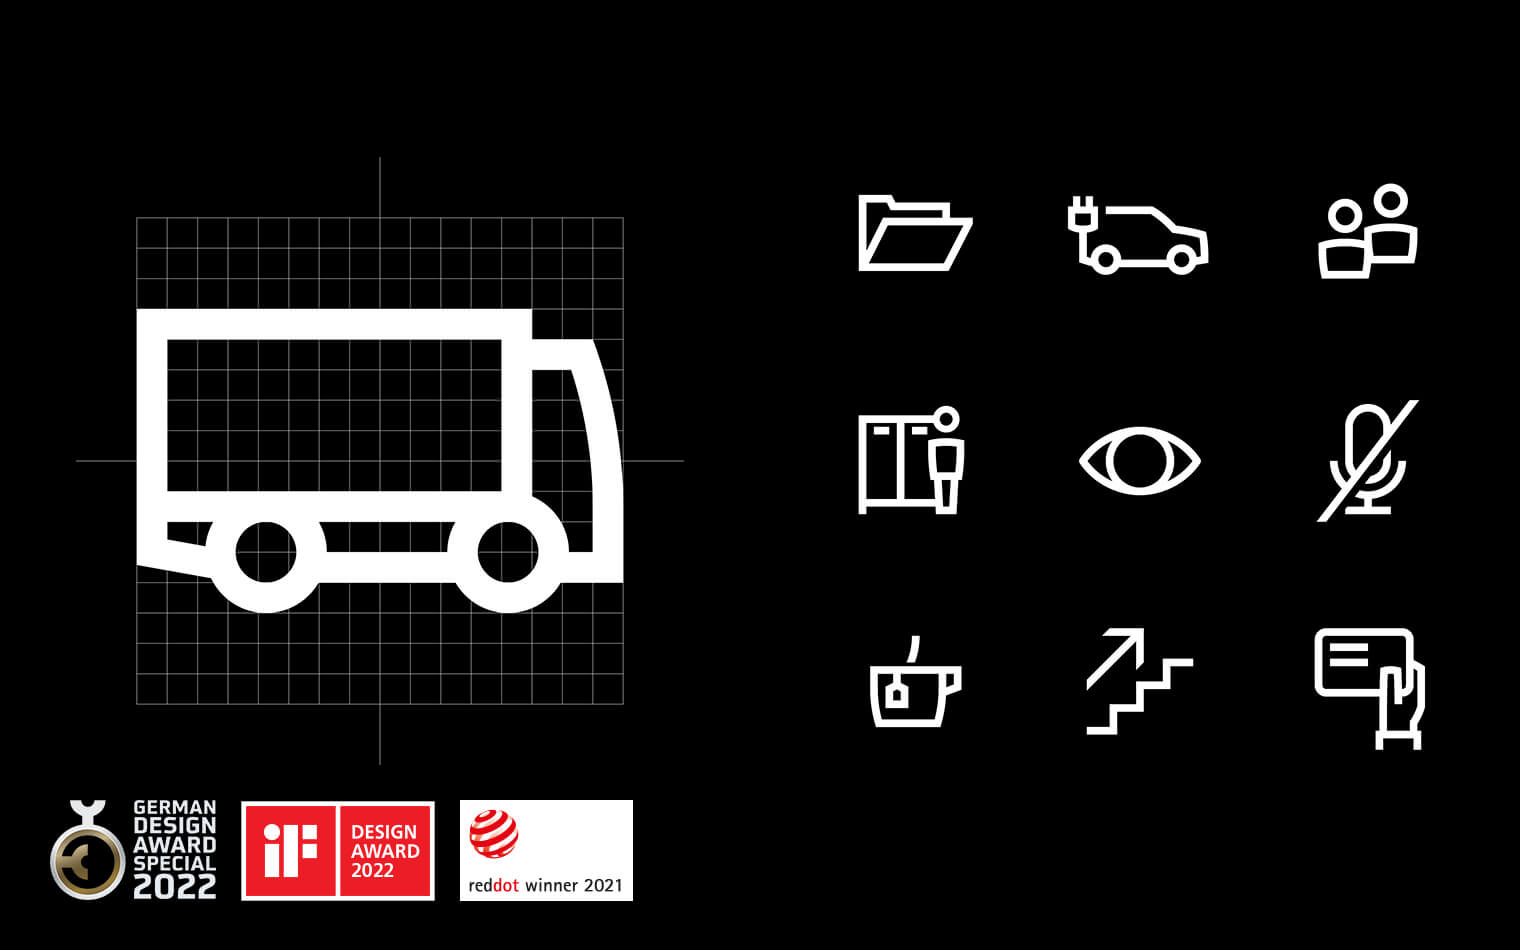 Auf diesem Bild sind Icons der Wilo Piktogramme und die Logos German Design Award 2022, Red Dot Winner 2021 und iF Design Award 2022 zu sehen.